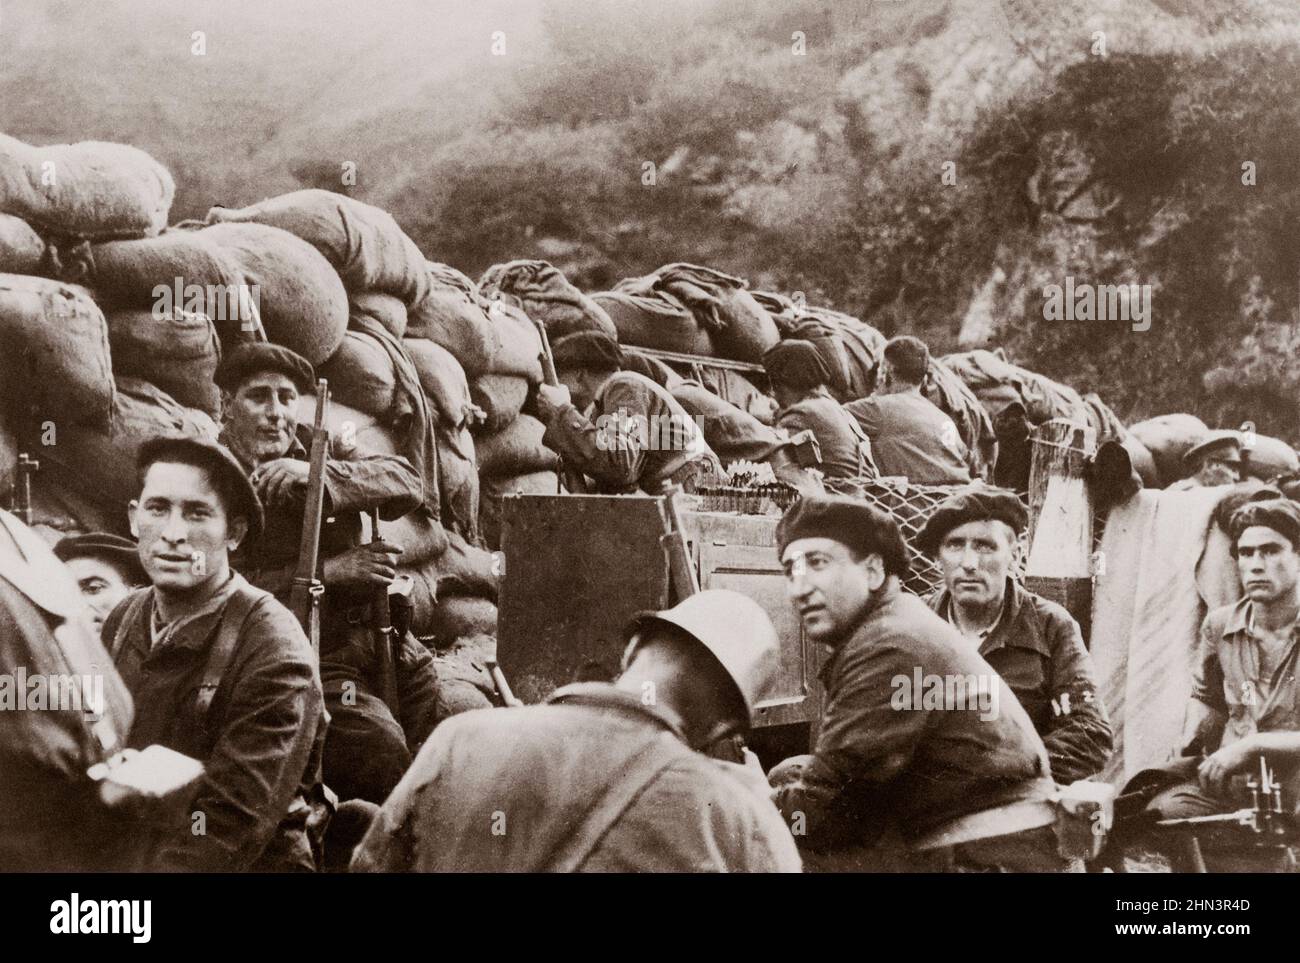 Photo d'archives de la guerre civile espagnole. Miliciens républicains derrière des sacs de sable (bataille d'Irún). Espagne. 1936 Banque D'Images